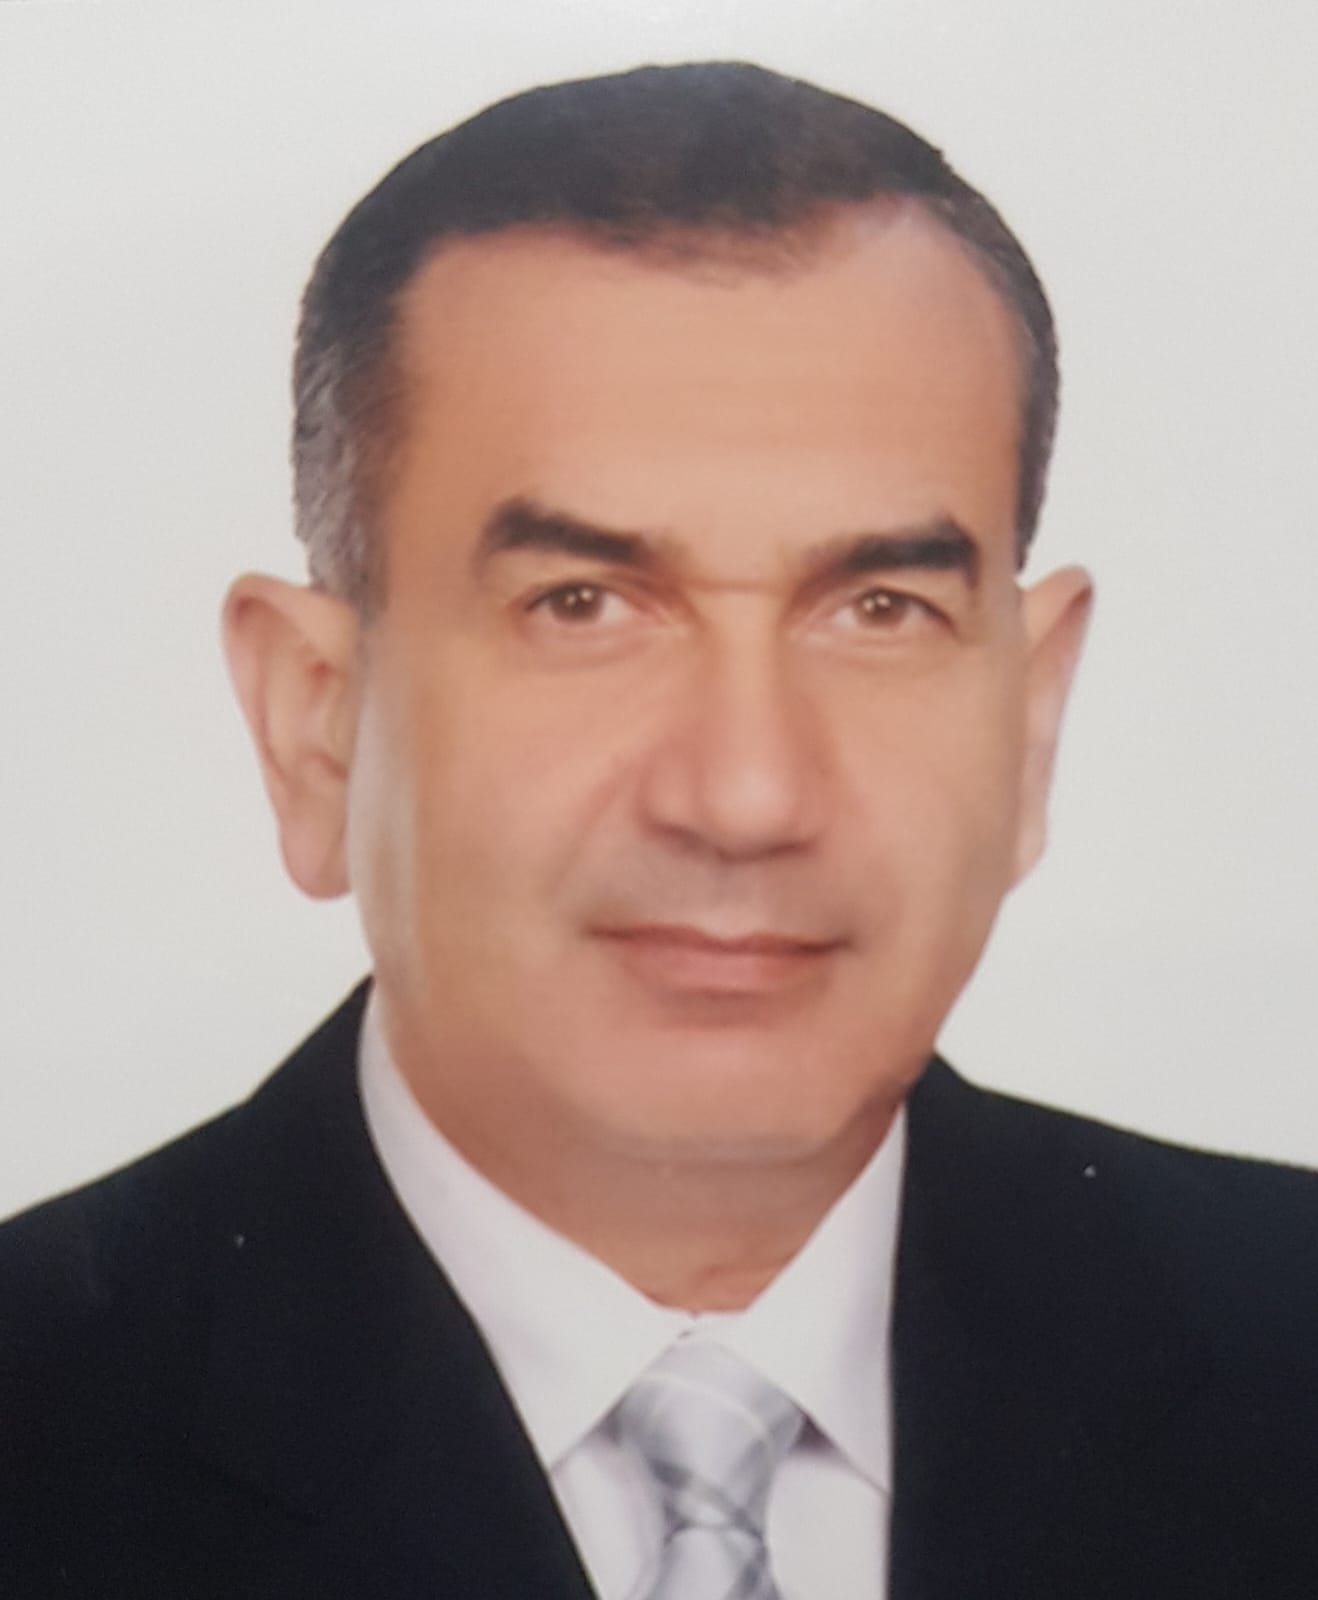 دكتور سامح سعد الدين